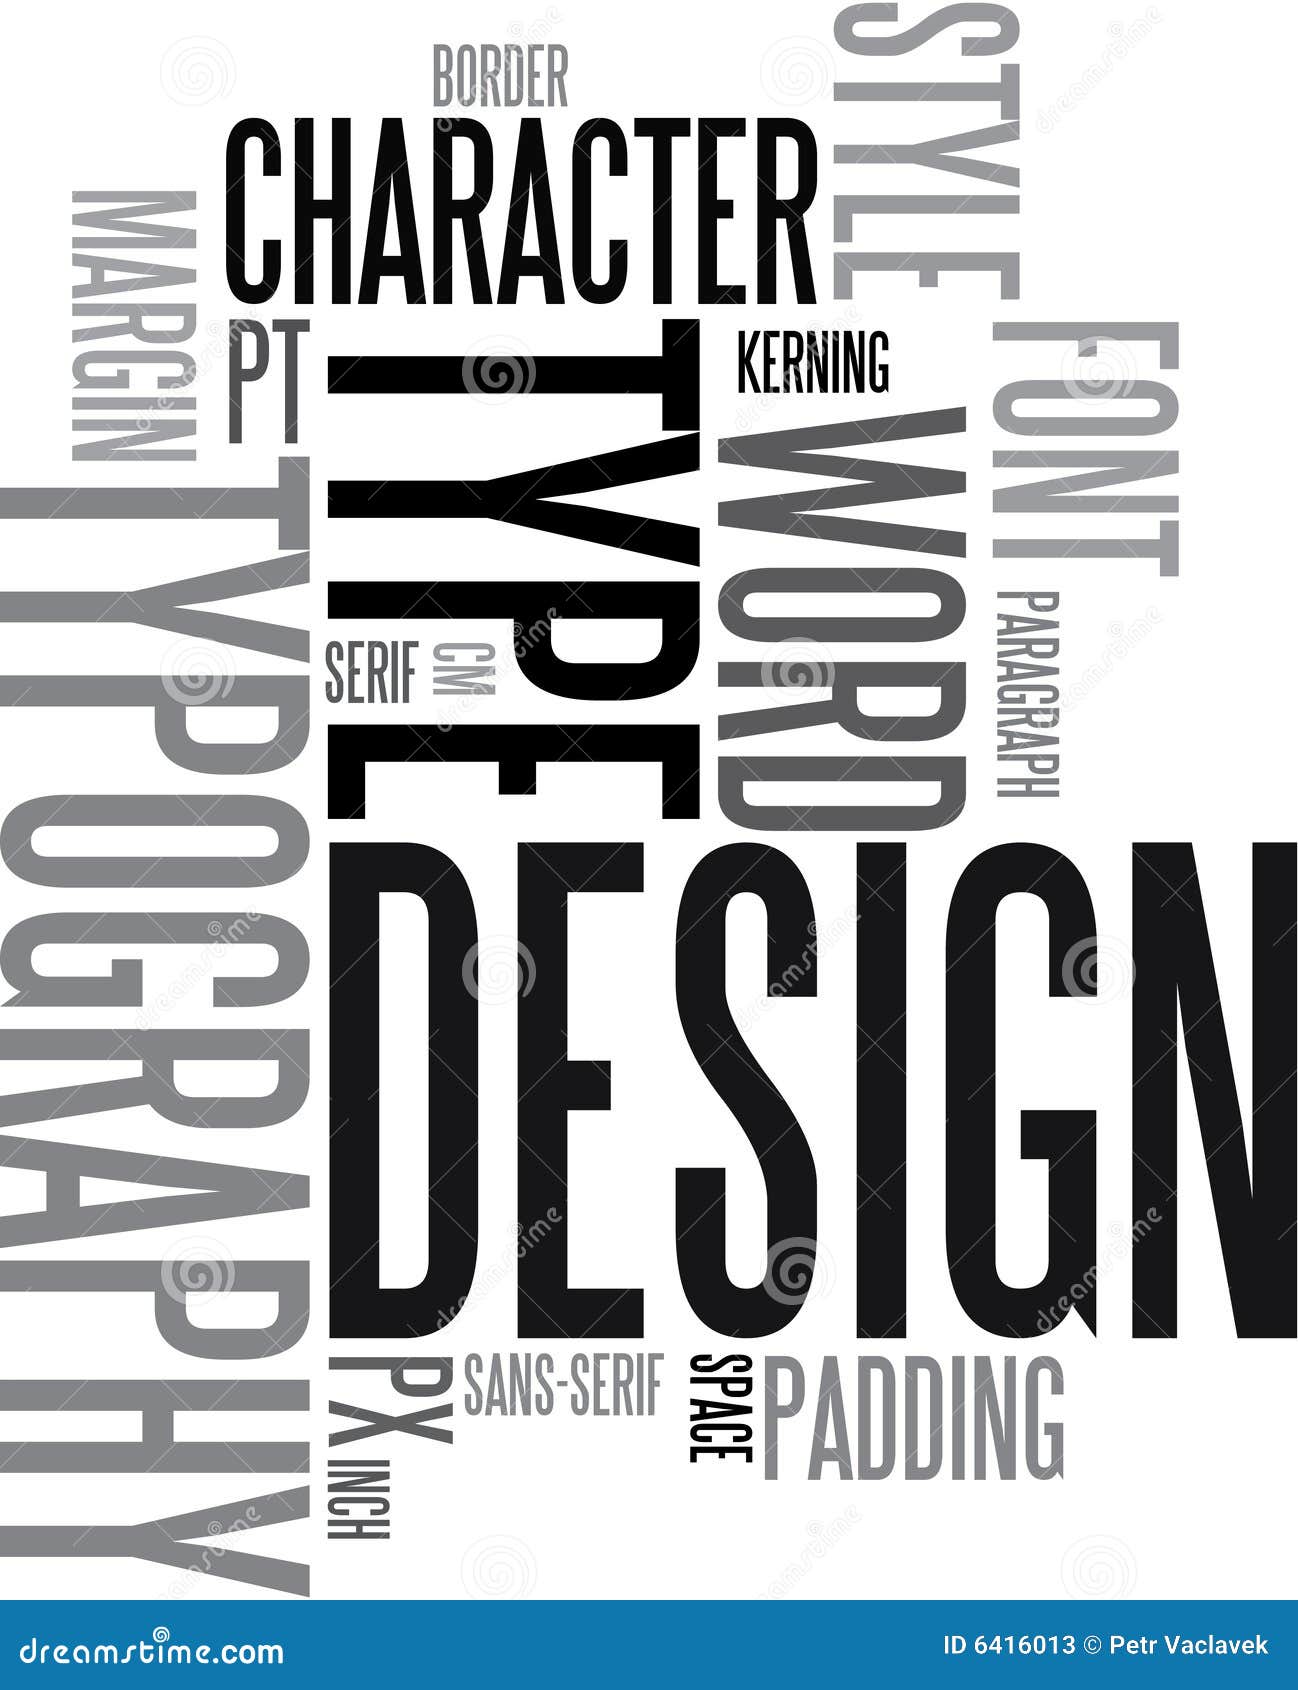 Стили типографики. Типографика дизайн. Типографический плакат. Шрифтовой дизайн. Типографика в графическом дизайне.